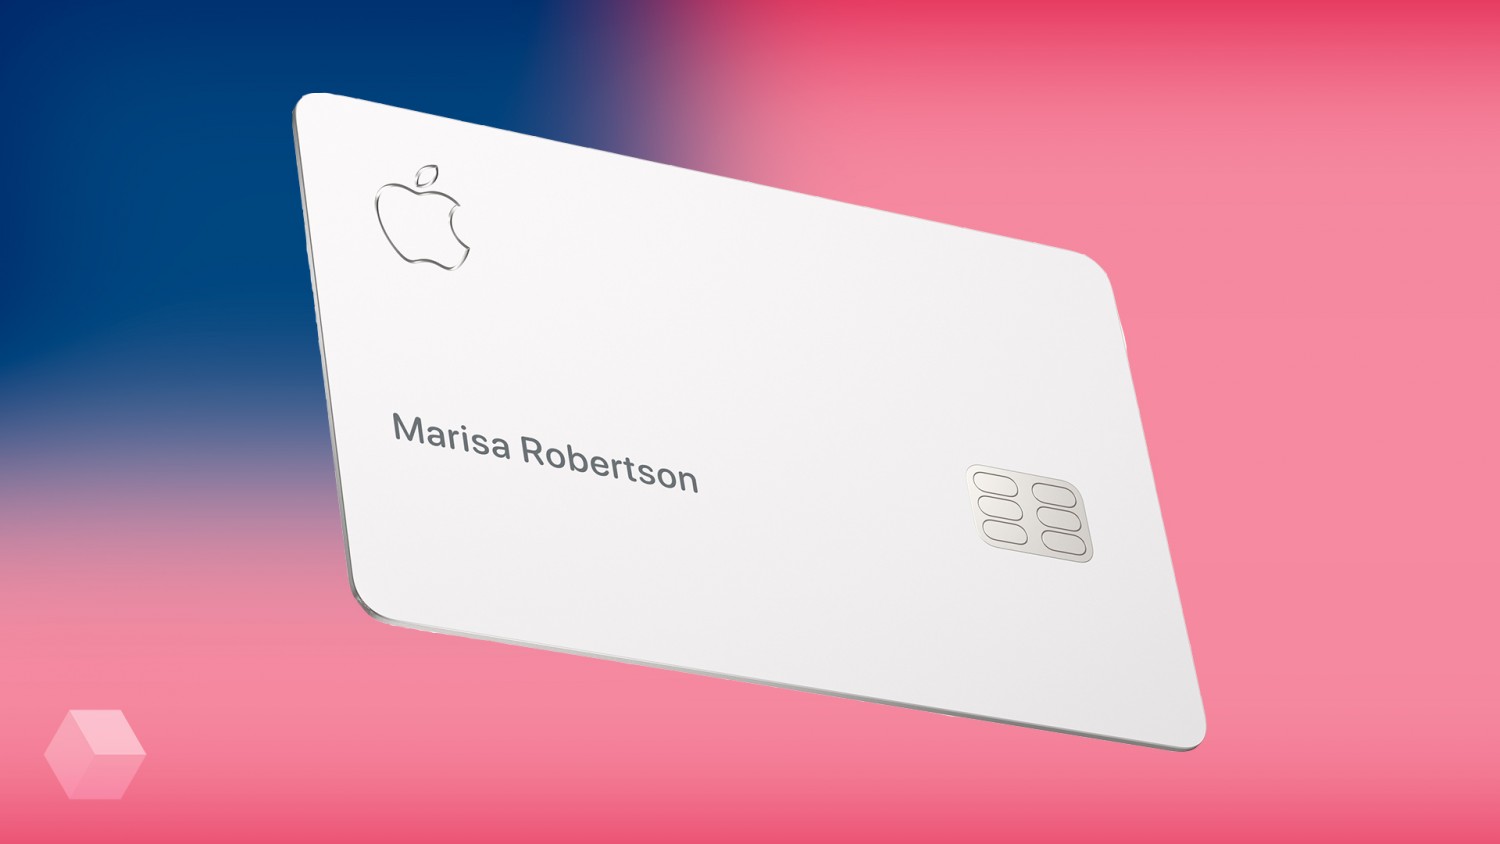 Кредитная карта Apple стала доступна для всех жителей США